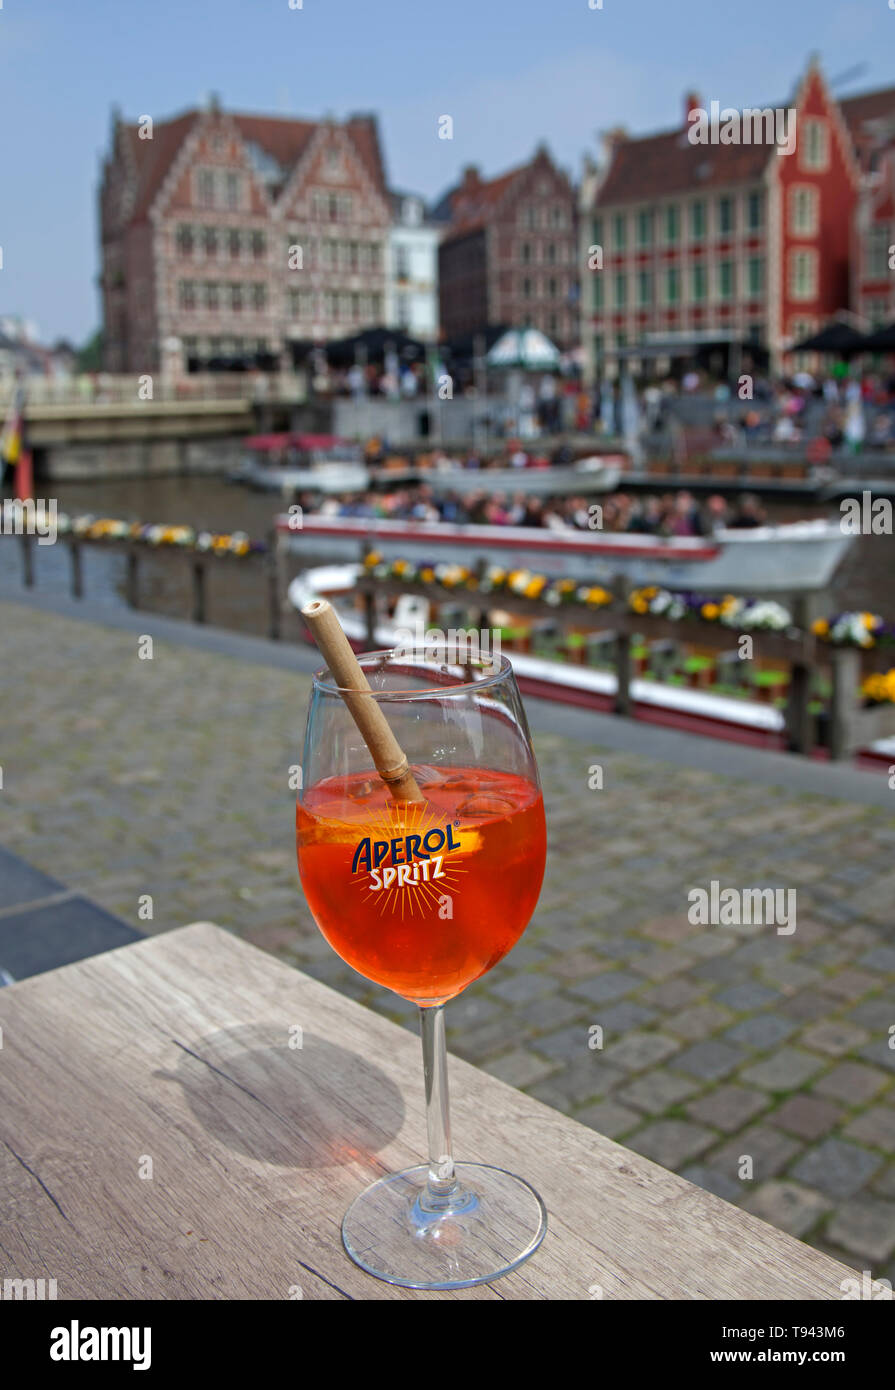 Aperol Spritz trinken auf cafe bar Tisch mit Flusses Leie Waterfront, und  touristische Boote auf dem Fluss im Hintergrund Stockfotografie - Alamy